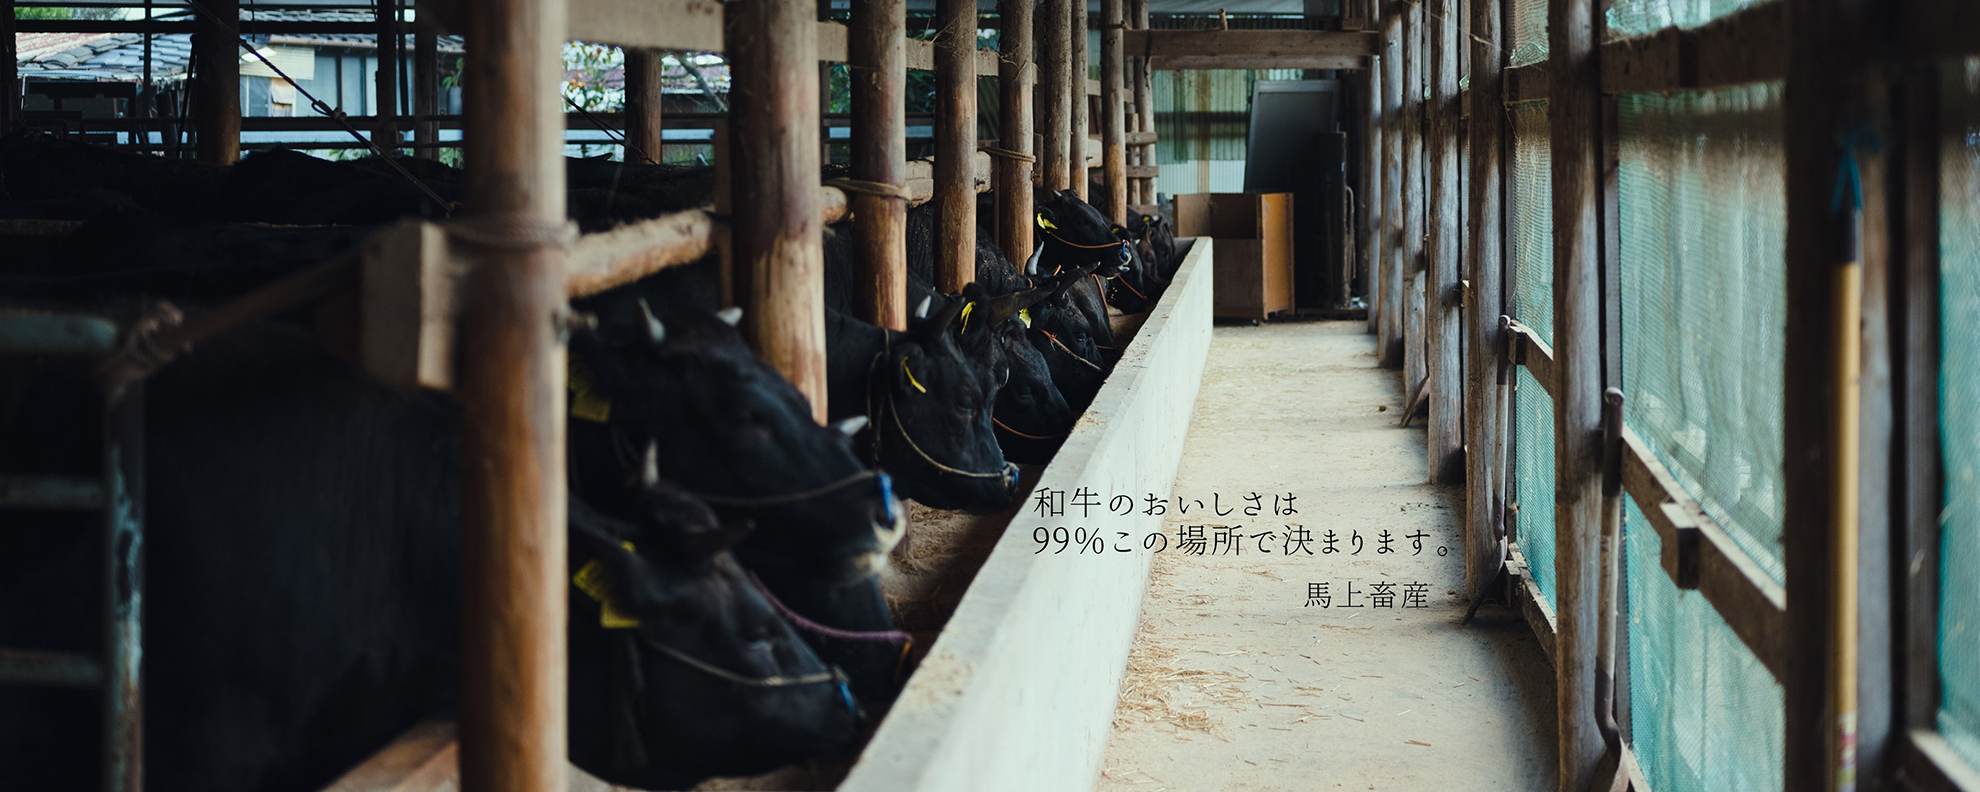 広島・段原で広島牛が食べれる焼肉店「焼肉ふるさと」